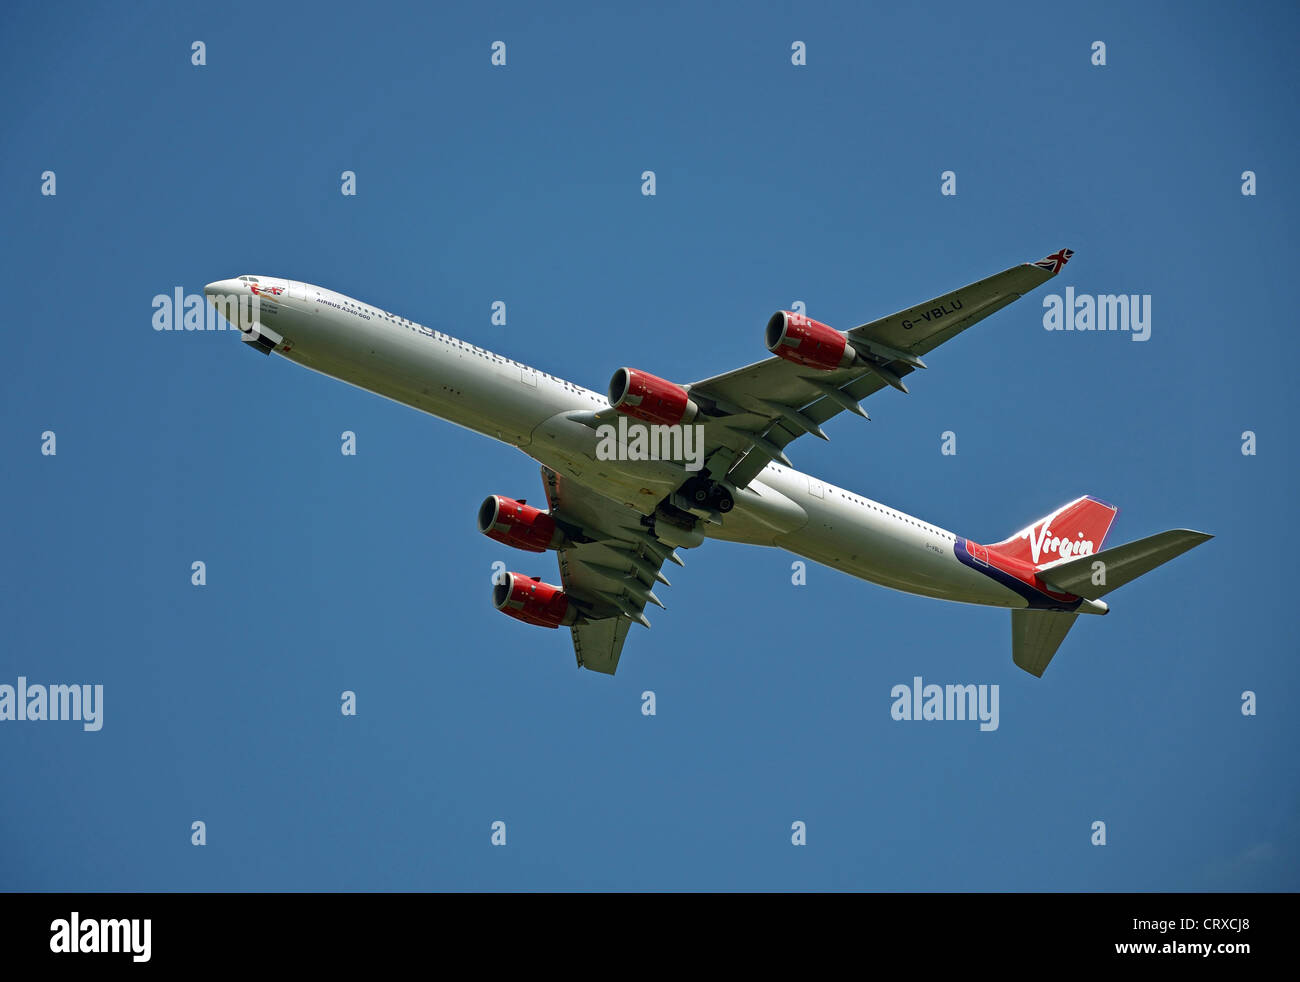 Virgin Atlantic Airways Airbus A340-642 avions qui décollent de l'aéroport de Heathrow, Londres, Angleterre, Royaume-Uni Banque D'Images